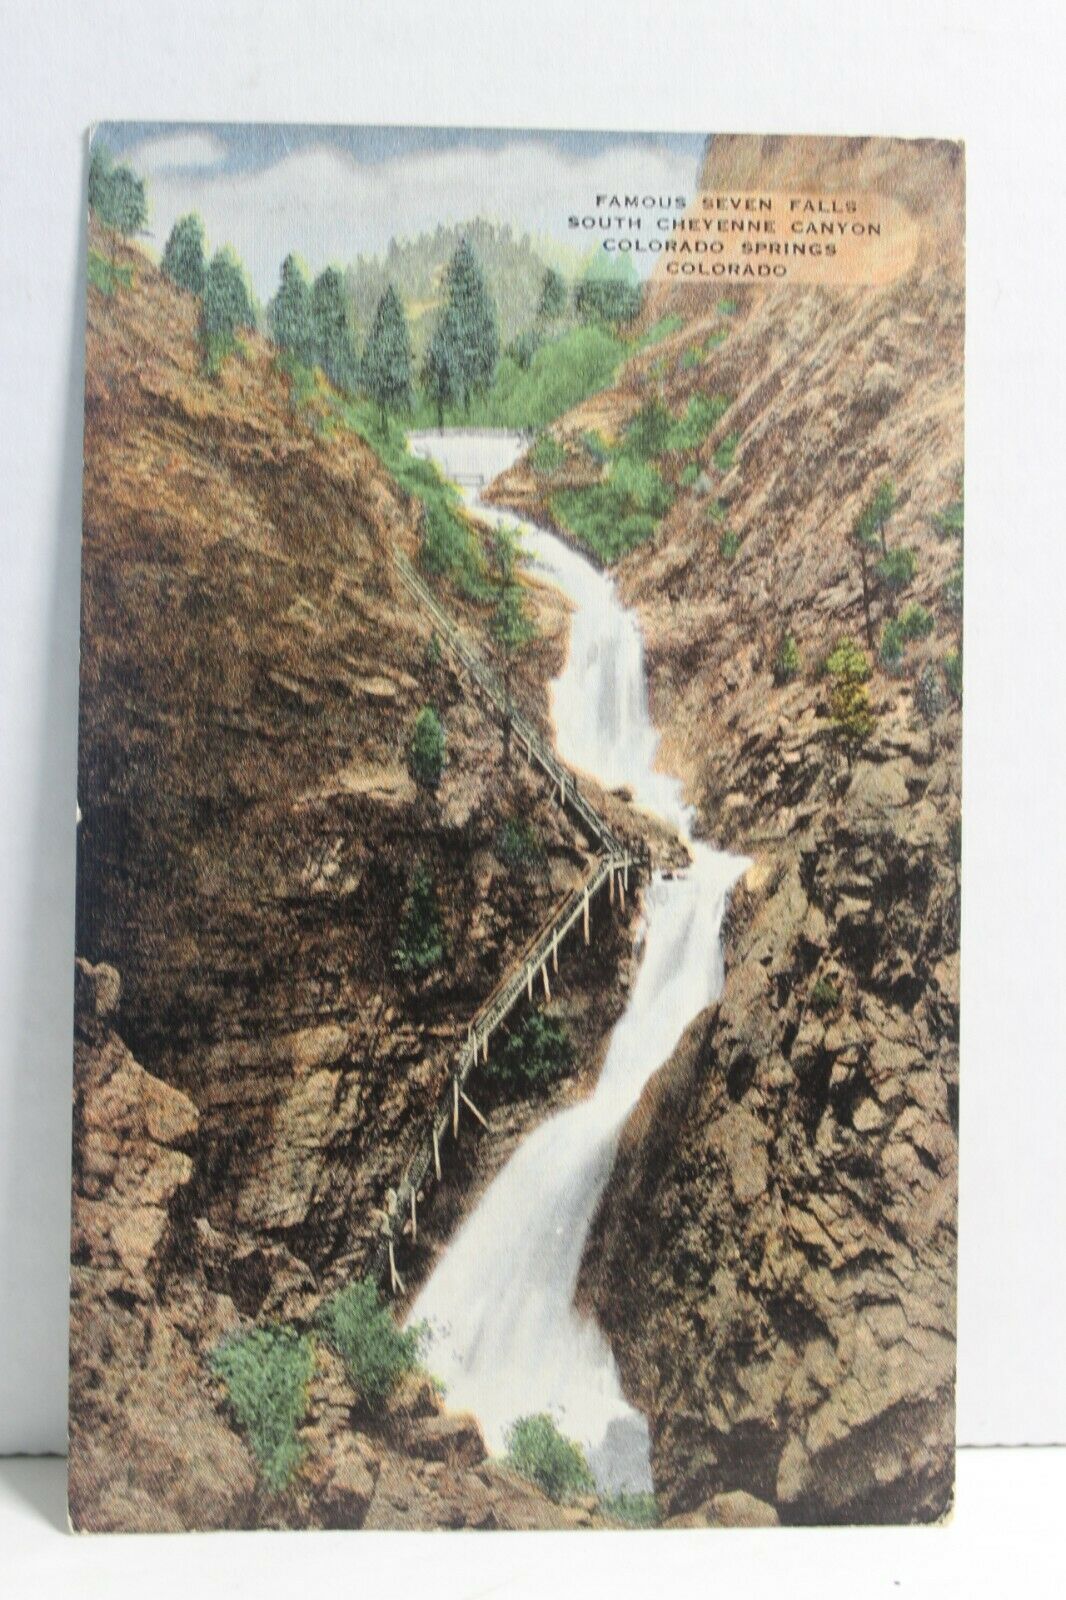 Famous Seven Falls South Cheyenne Canyon Colorado Springs Colorado No. 30031